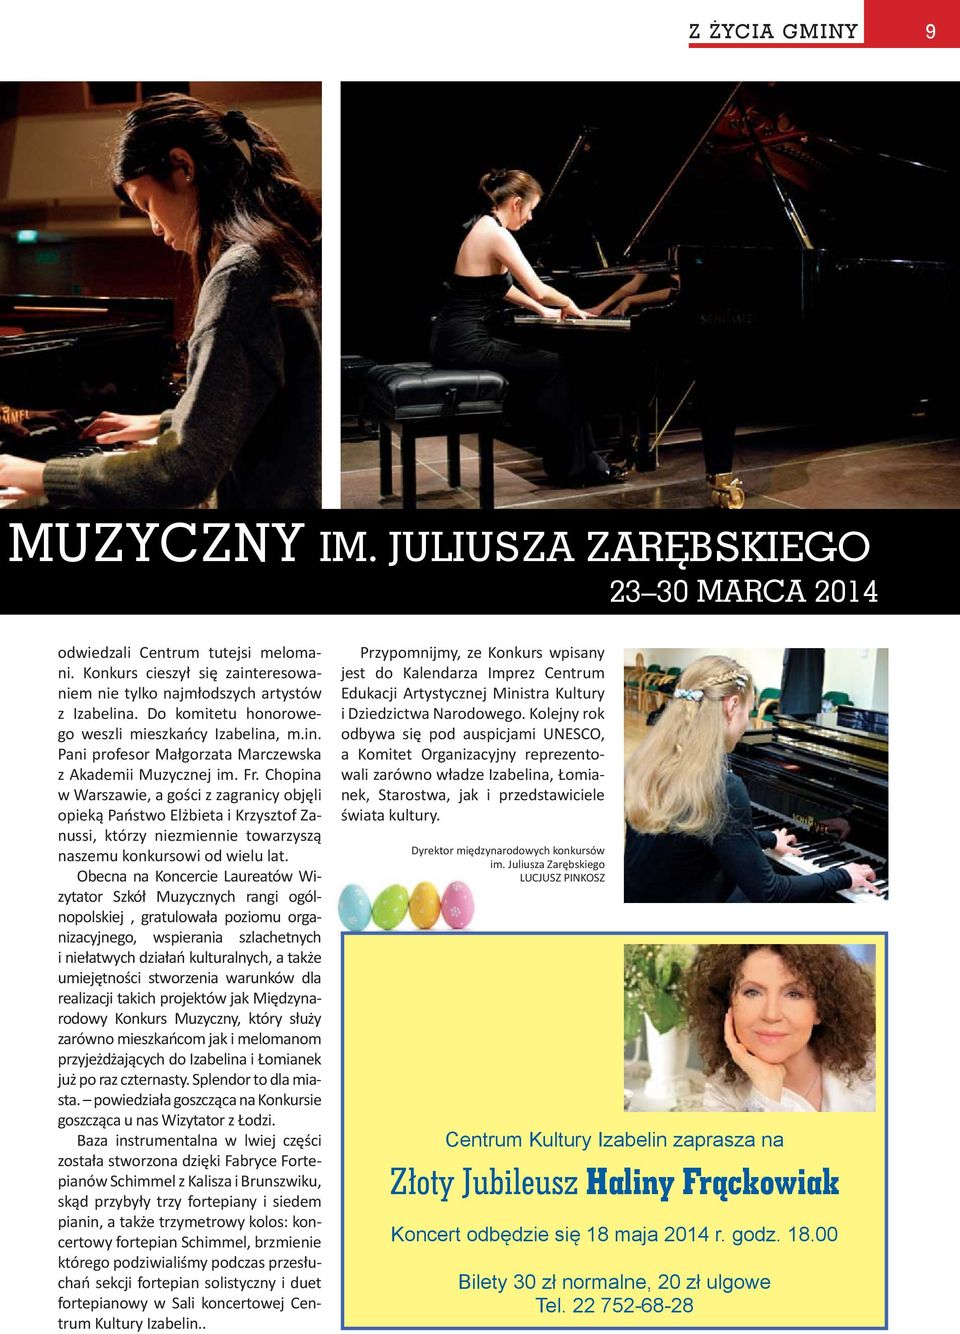 Chopina w Warszawie, a gości z zagranicy objęli opieką Państwo Elżbieta i Krzysztof Zanussi, którzy niezmiennie towarzyszą naszemu konkursowi od wielu lat.